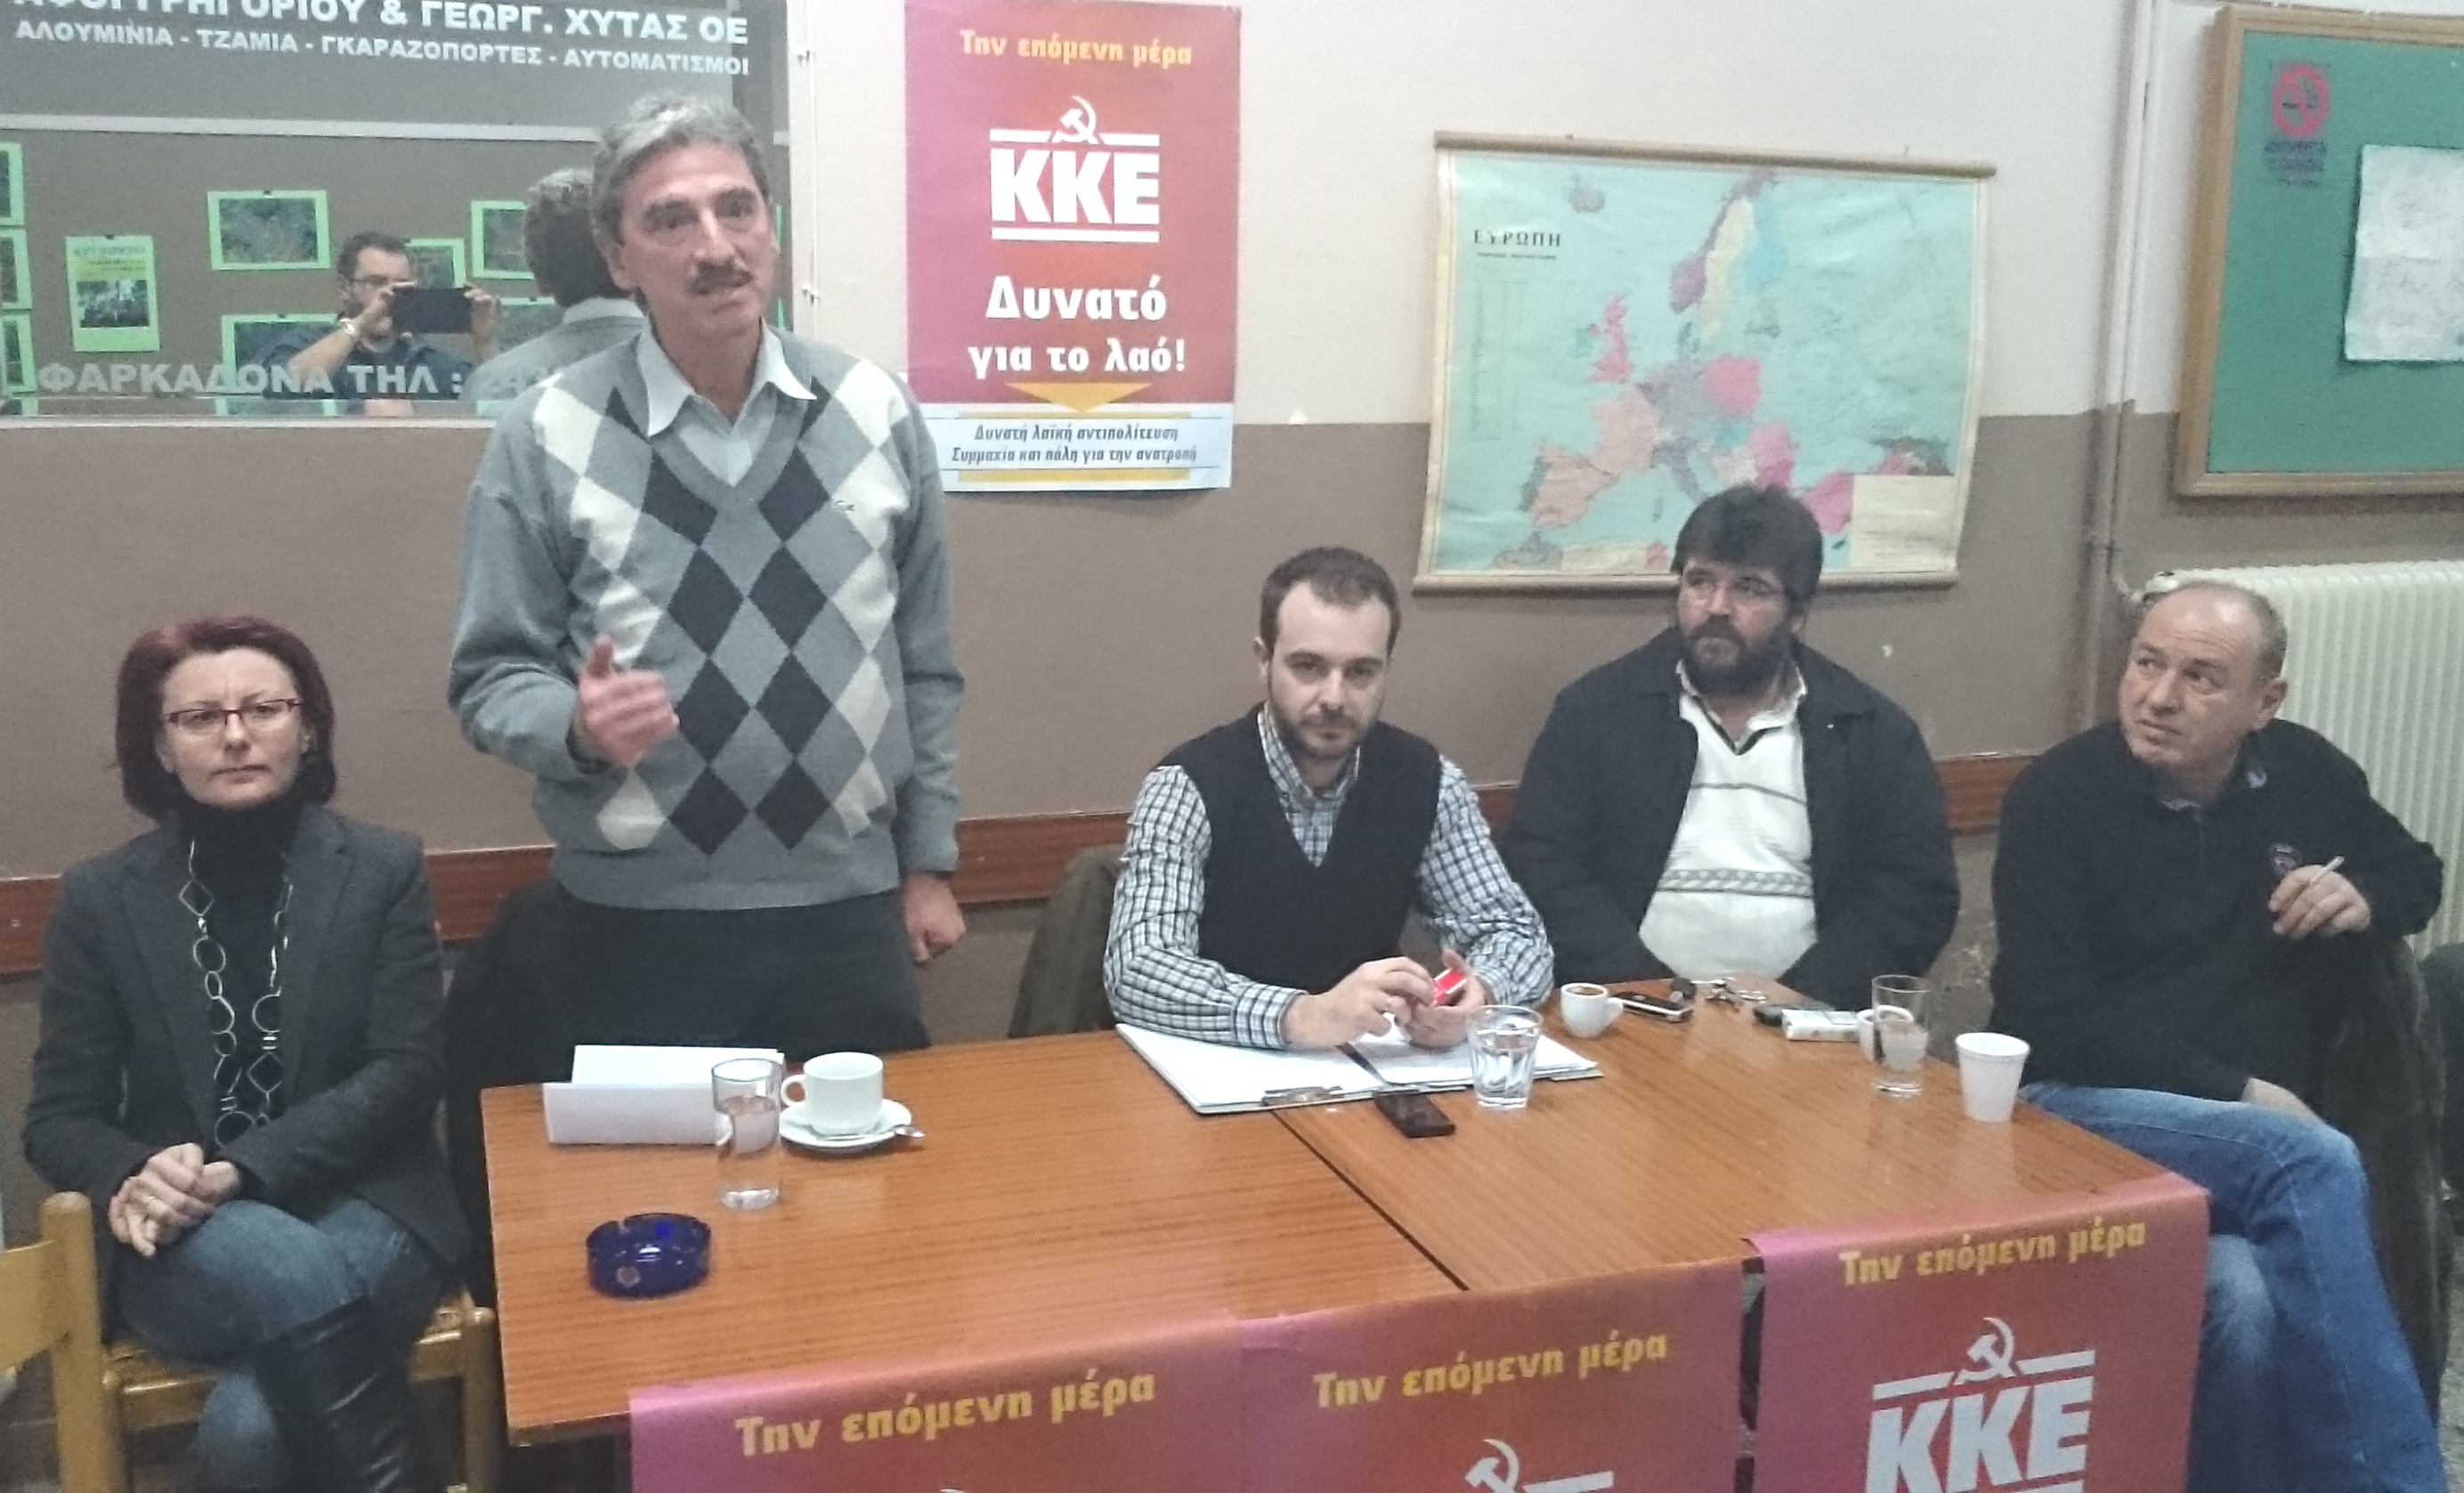 Αχιλλέας Κανταρτζής: "Η ψήφος στο ΚΚΕ ψήφος ελπίδας και δύναμης για τη φτωχή αγροτιά"